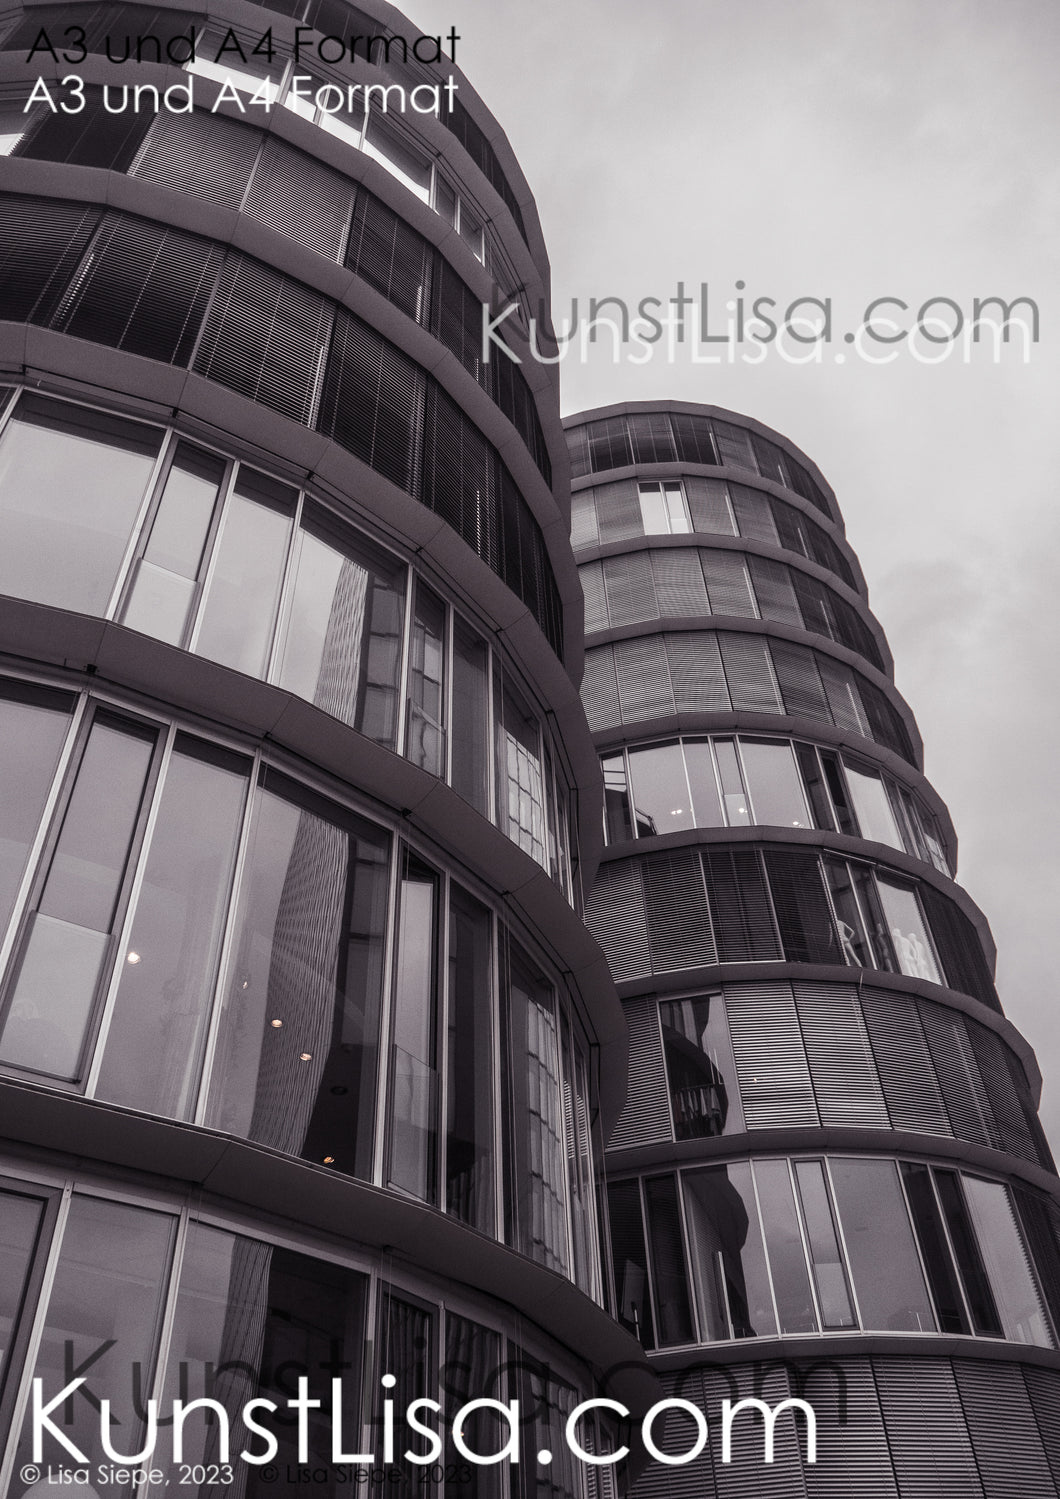 Architekturfotografie-mit-Schwarz-Weiß-Grau-Filter-runde-Hochhäuser-mit-Glasfront-im-Medienhafen-Düsseldorf-in-Deutschland-Format-A3-und-A4